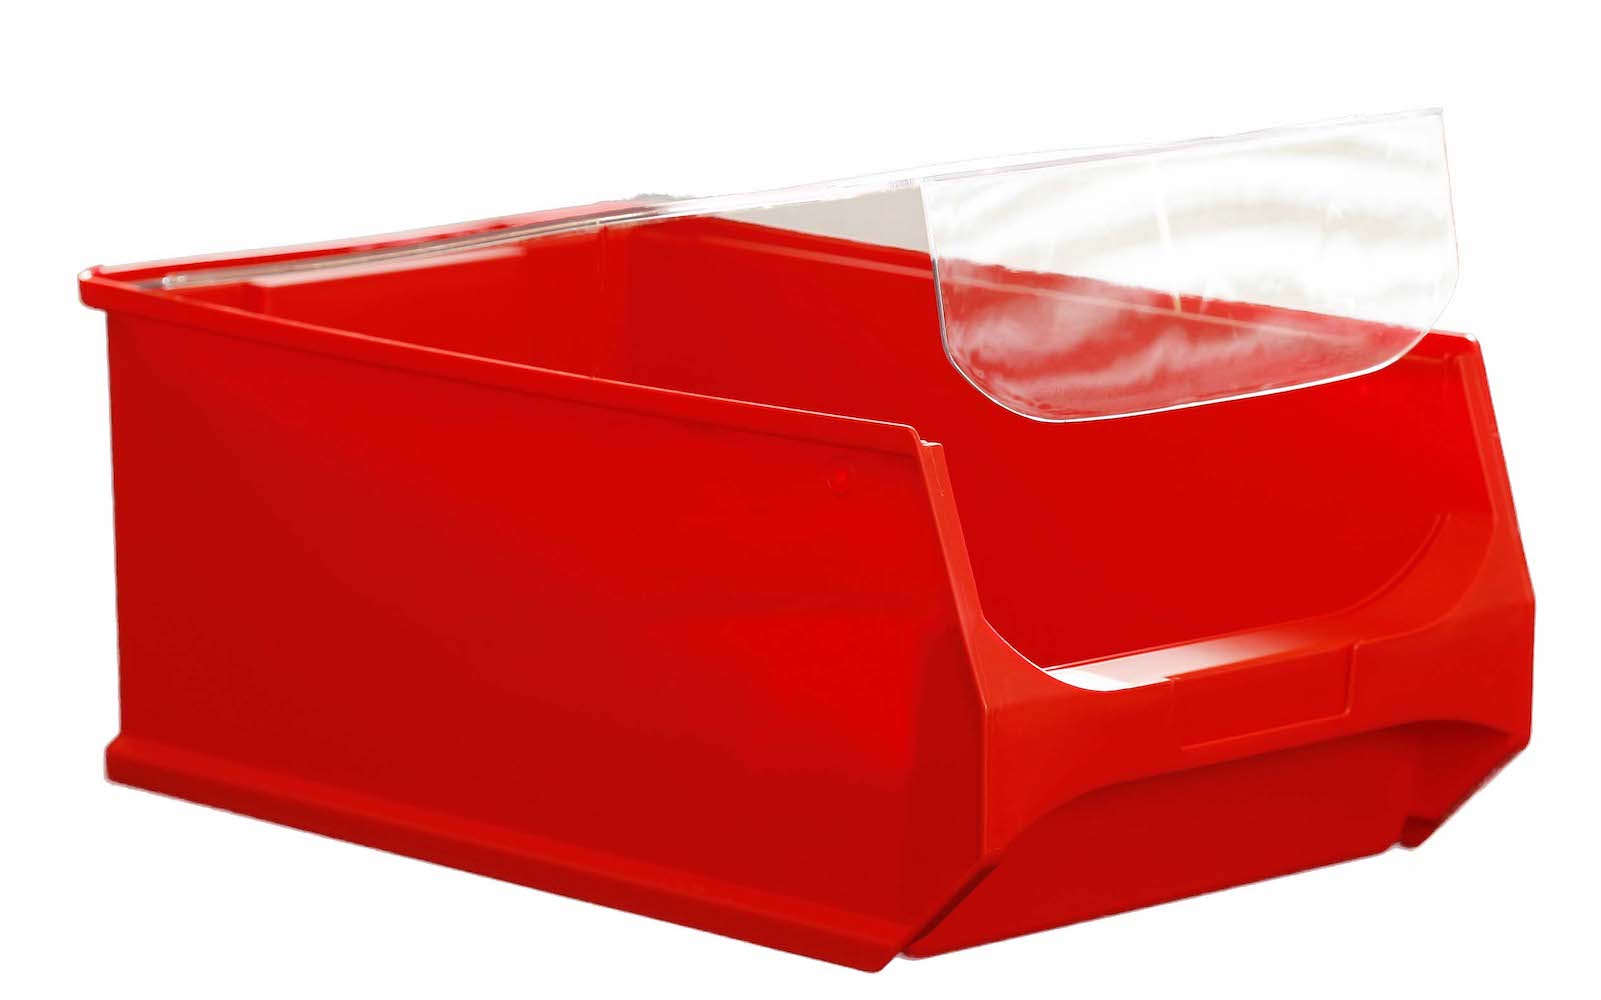 Staubdeckel 4x transparente Abdeckung für Sichtlagerbox 5.0 & 5.1 | HxBxT 0,3x29,2x45,5cm | Schmutzdeckel, Schutzdeckel, Sichtlagerbehälter, Sitchlagerkasten